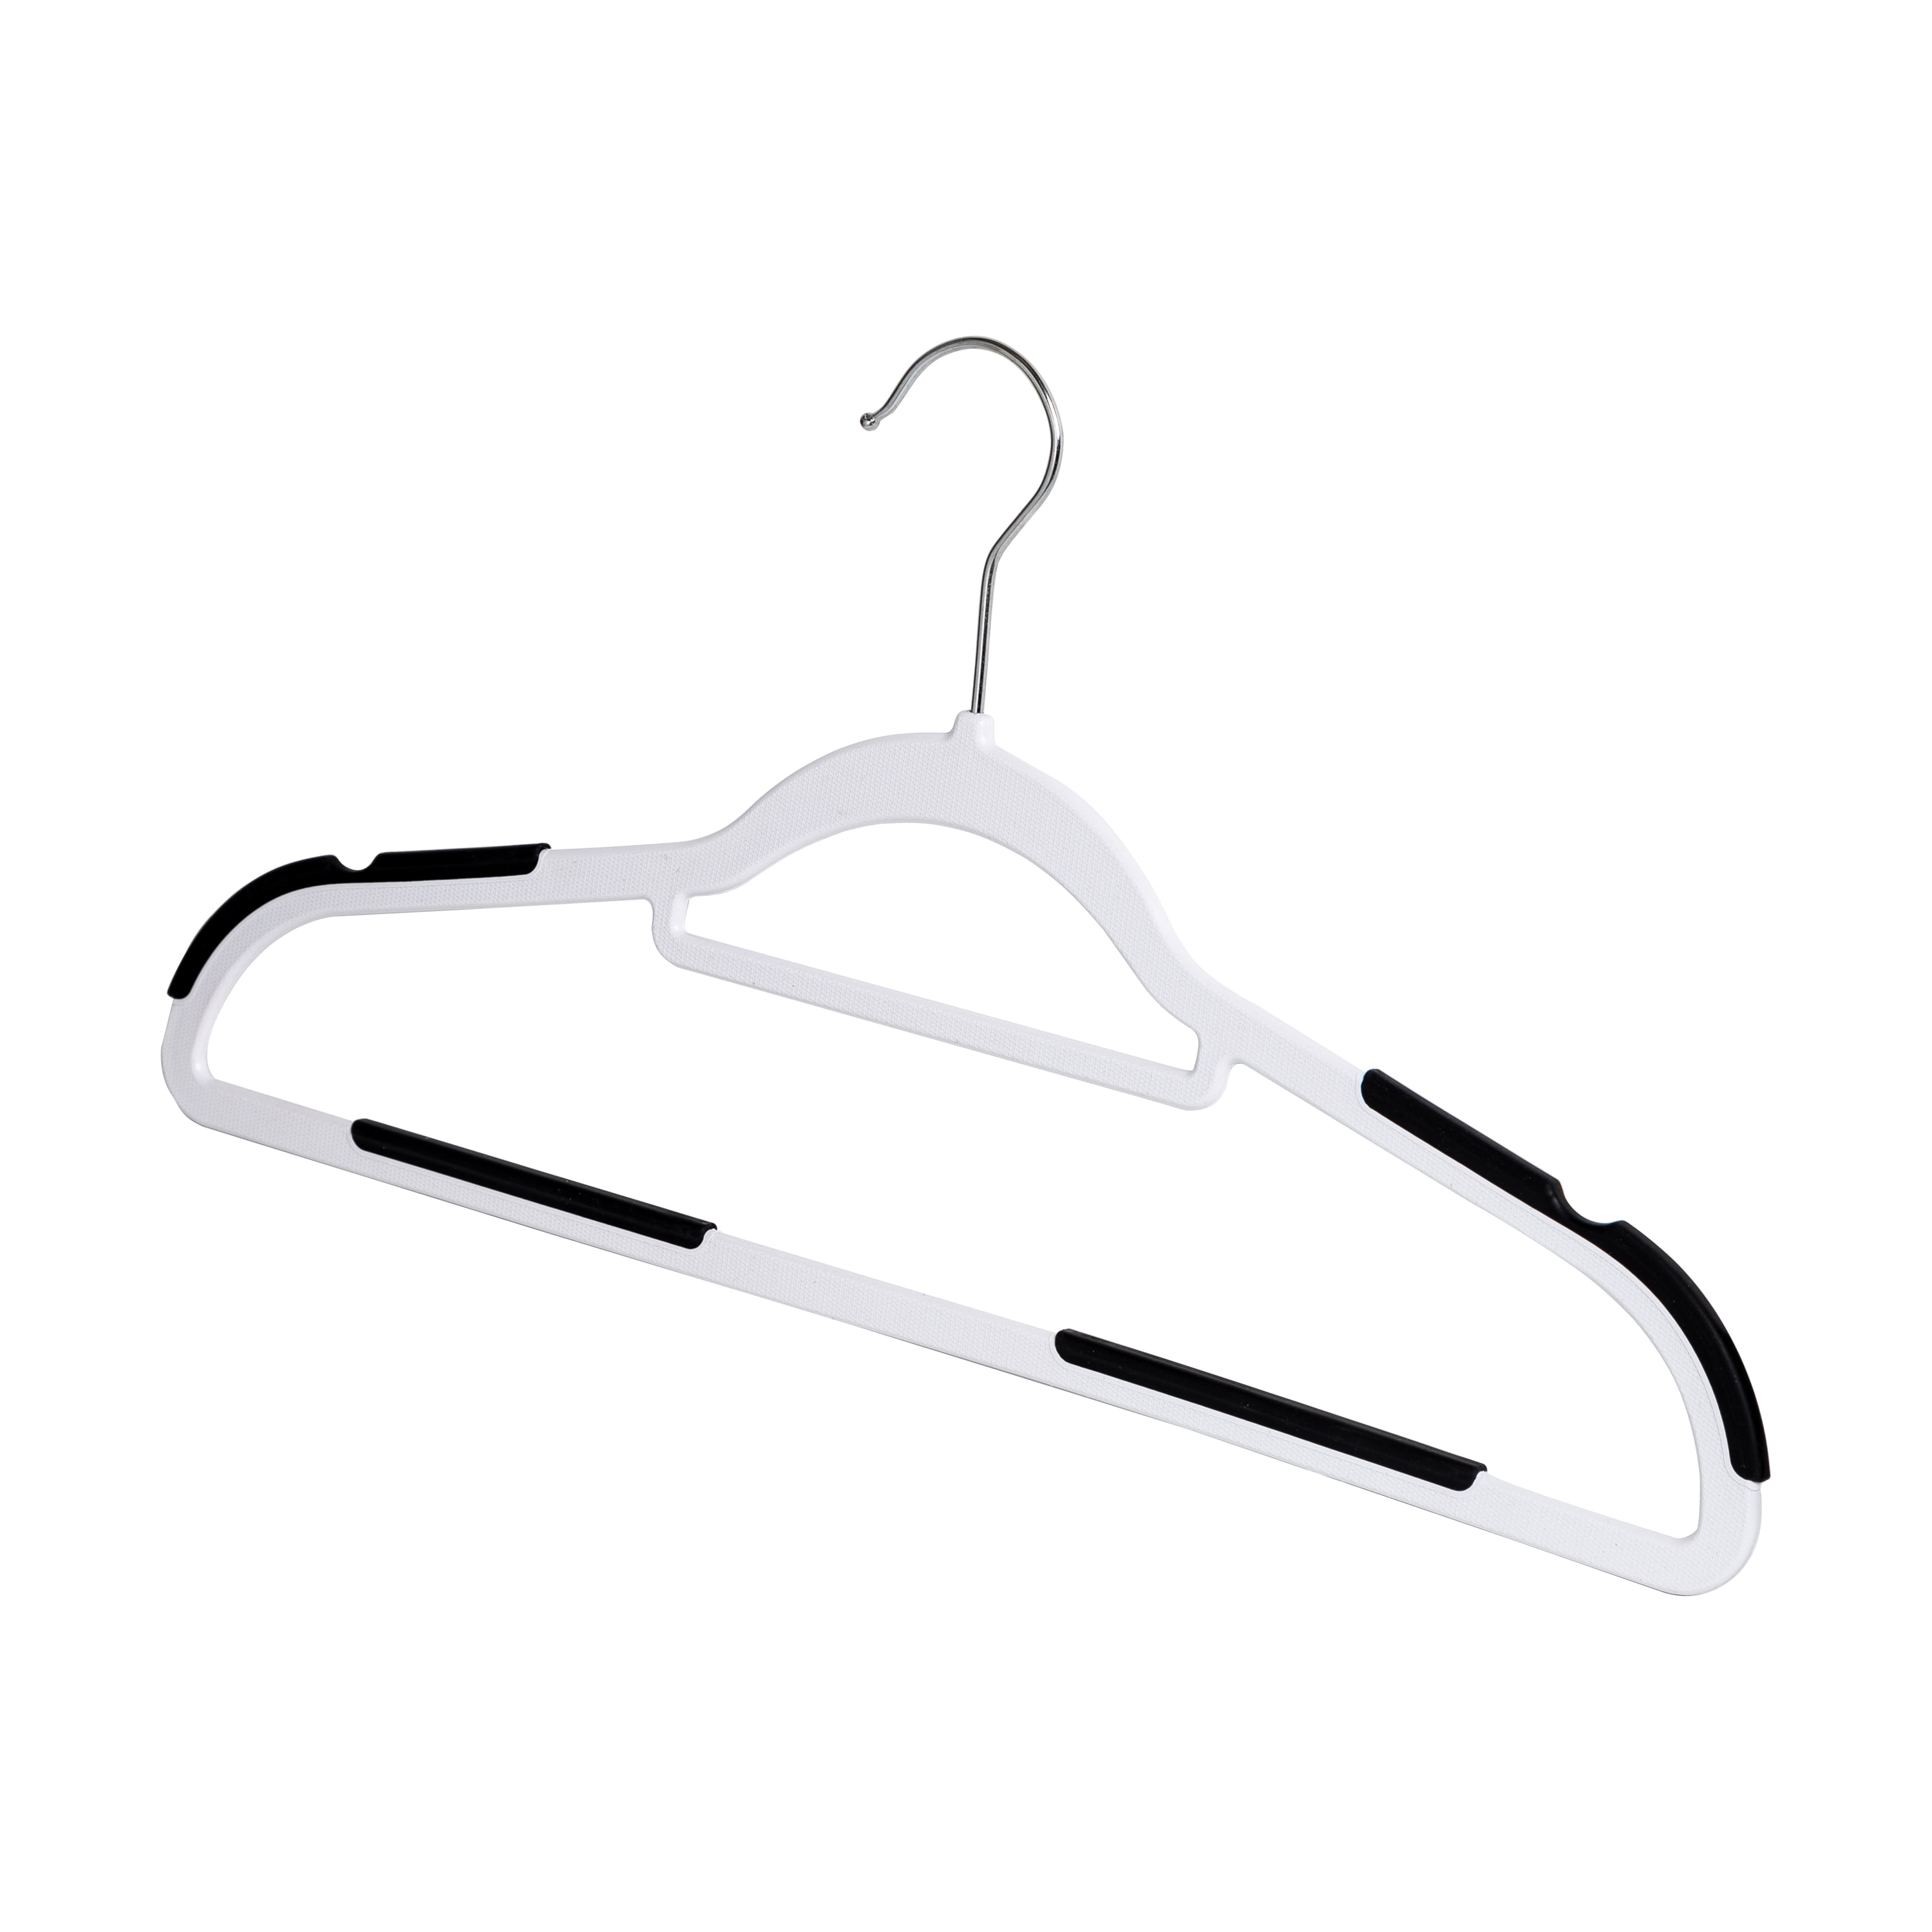 Laura Ashley Hangers Plastic Non-slip Grip Clothing Hanger (White